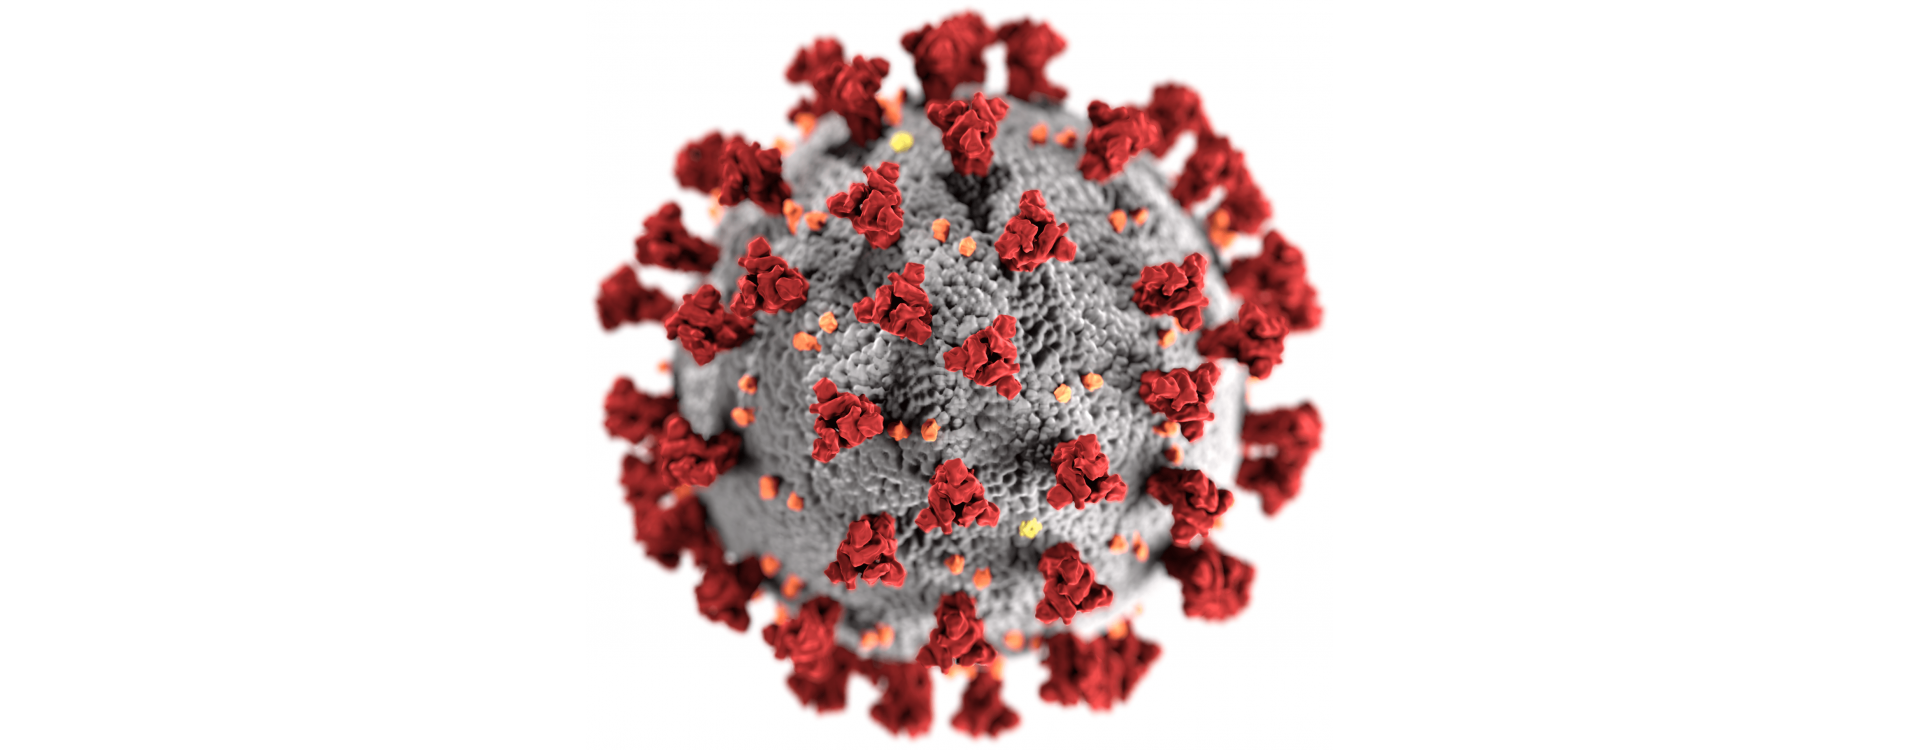 The coronavirus pandemic